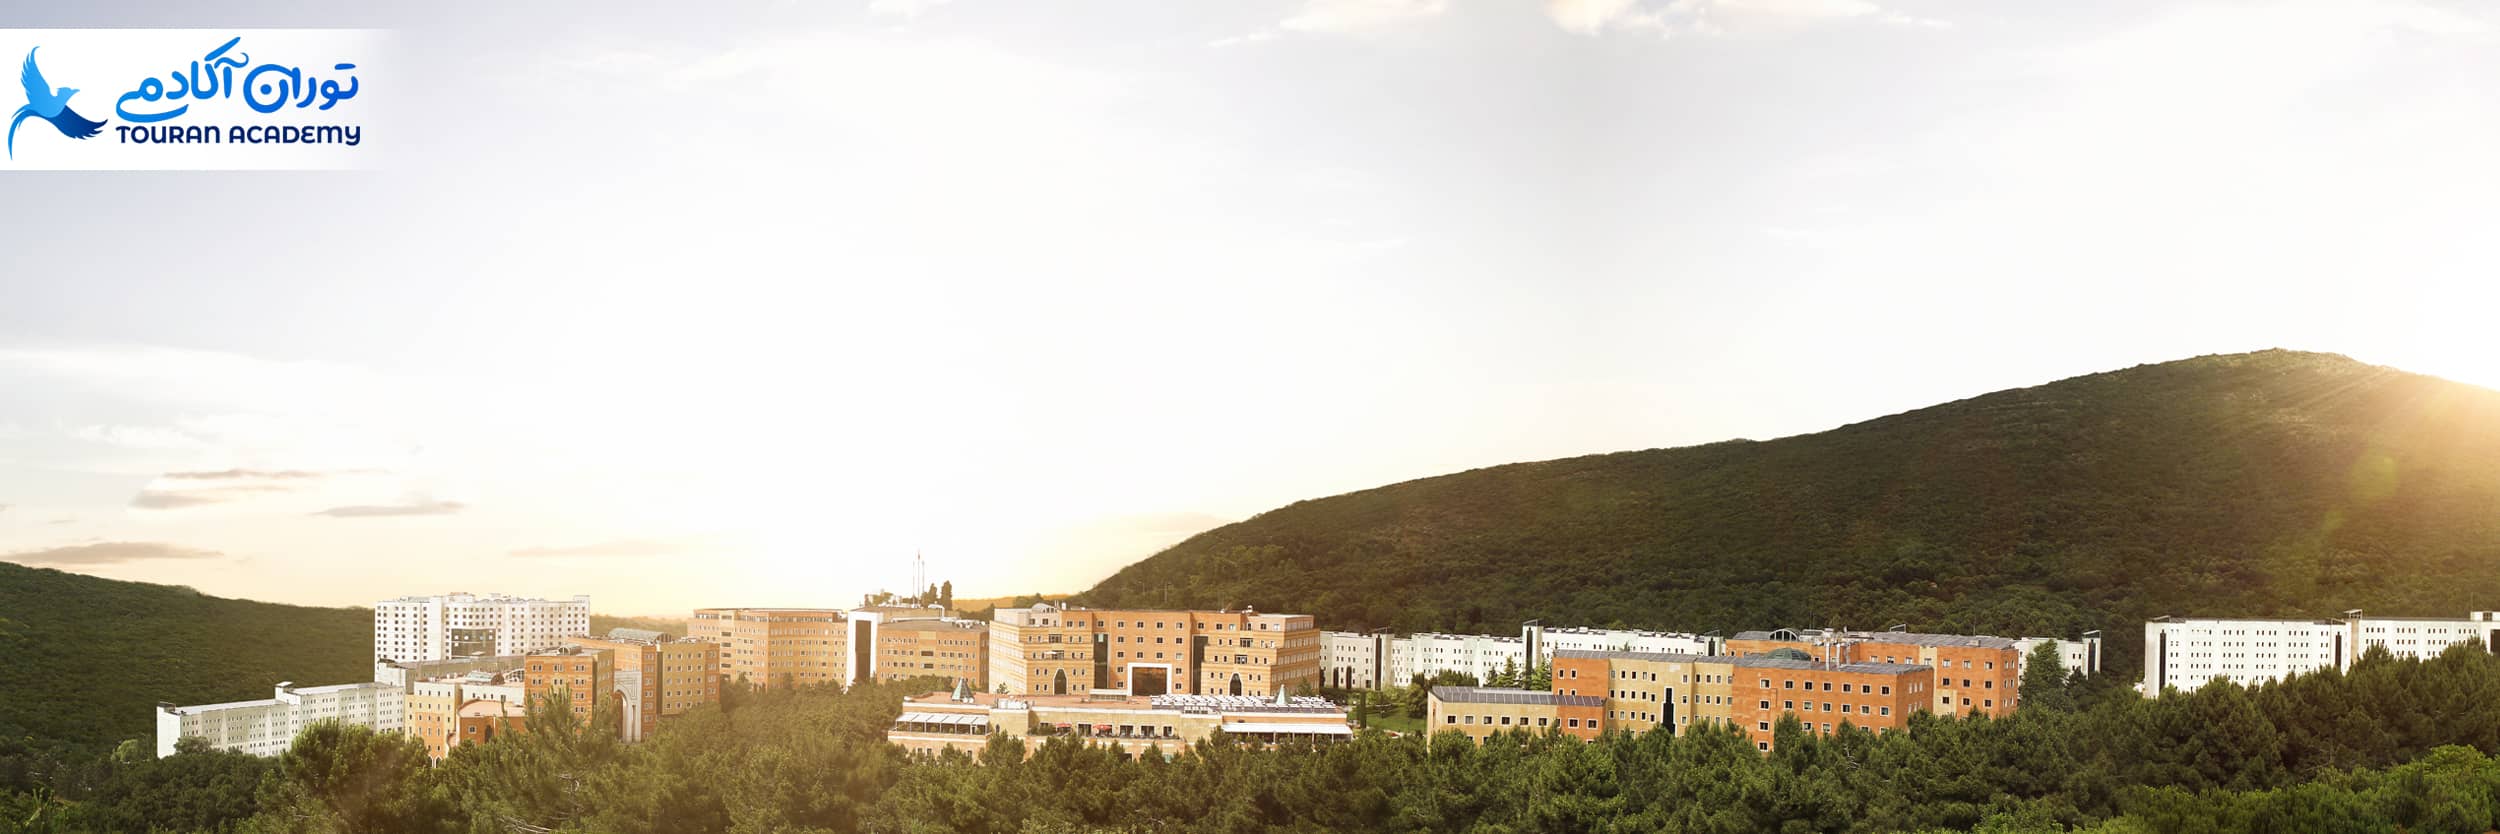 دانشگاه یدی تپه استانبول 